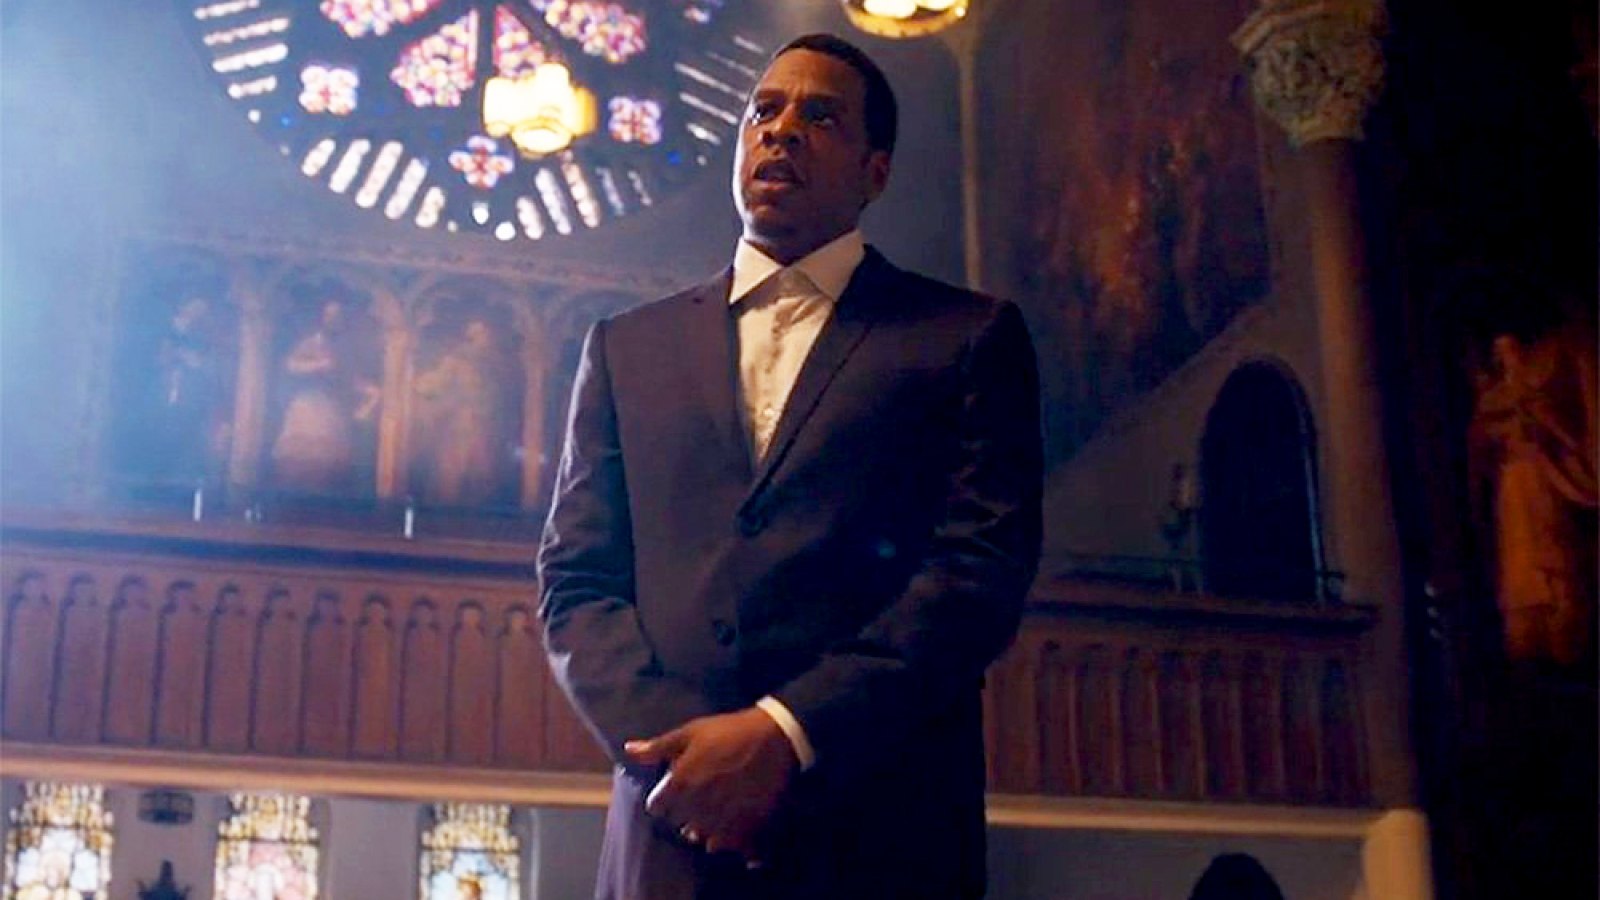 Jay Z in 'Family Feud' video